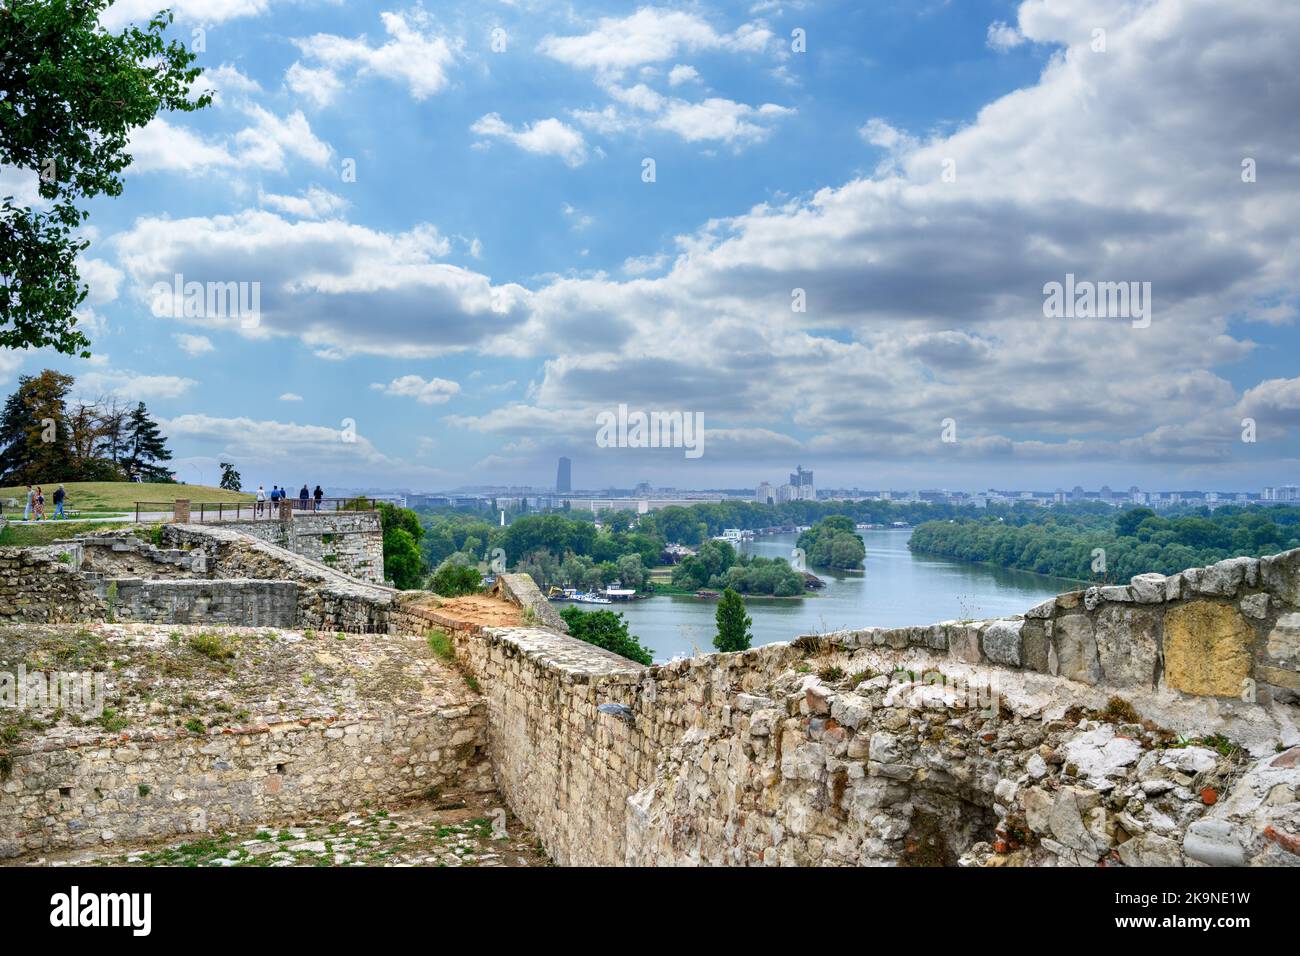 Vista de la confluencia de los ríos Sava y Danubio desde las murallas de la Fortaleza de Belgrado, Belgrado, Serbia Foto de stock